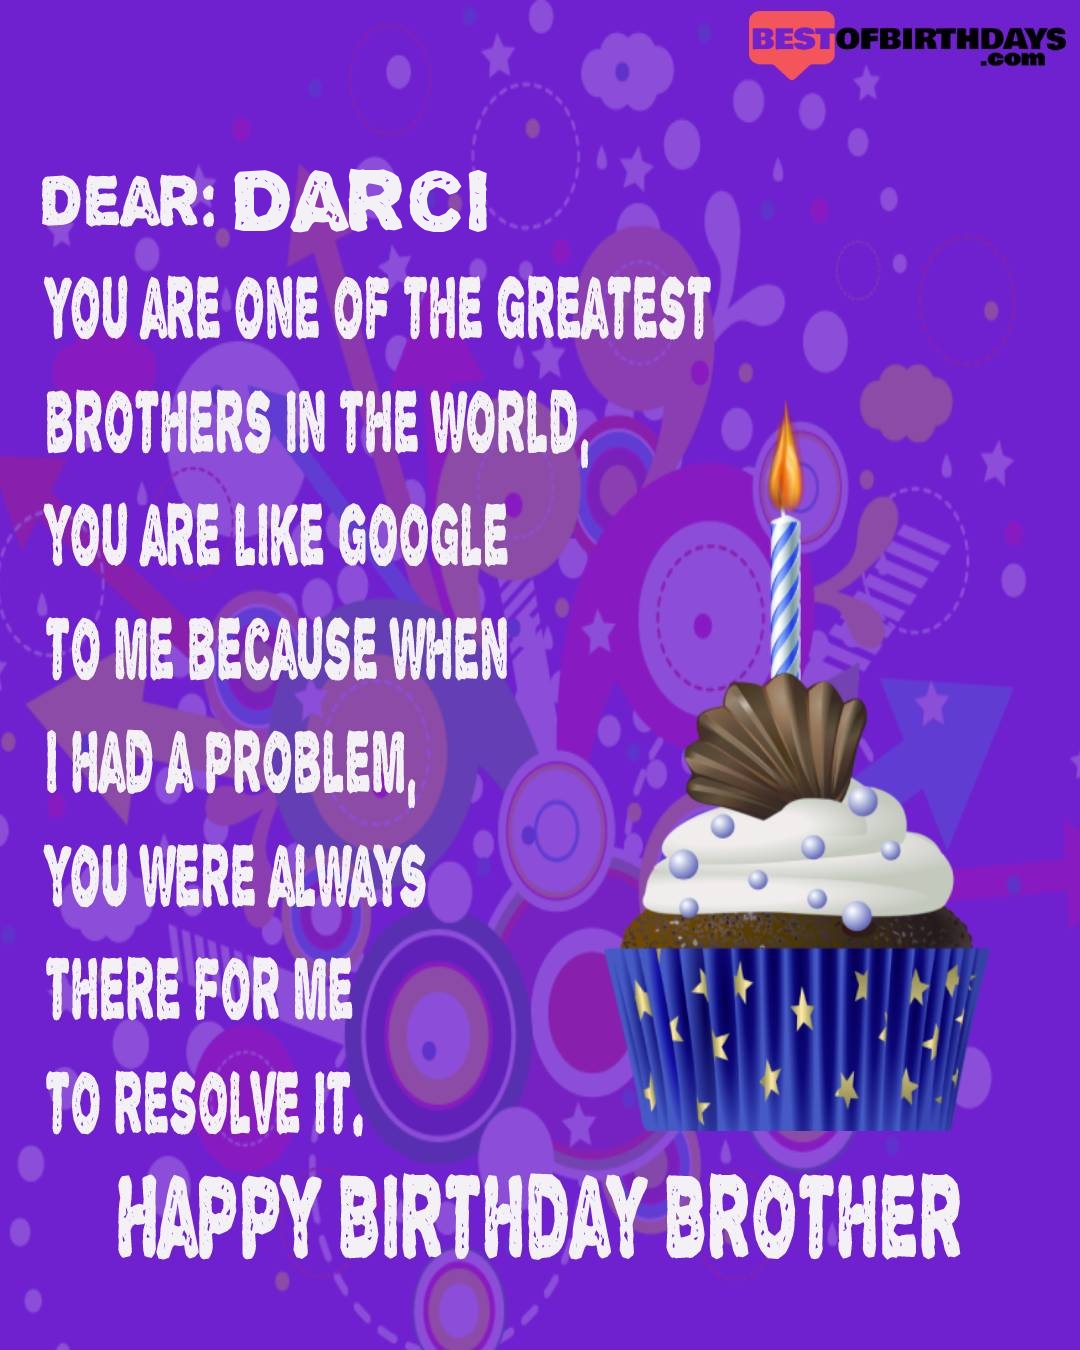 Happy birthday darci bhai brother bro